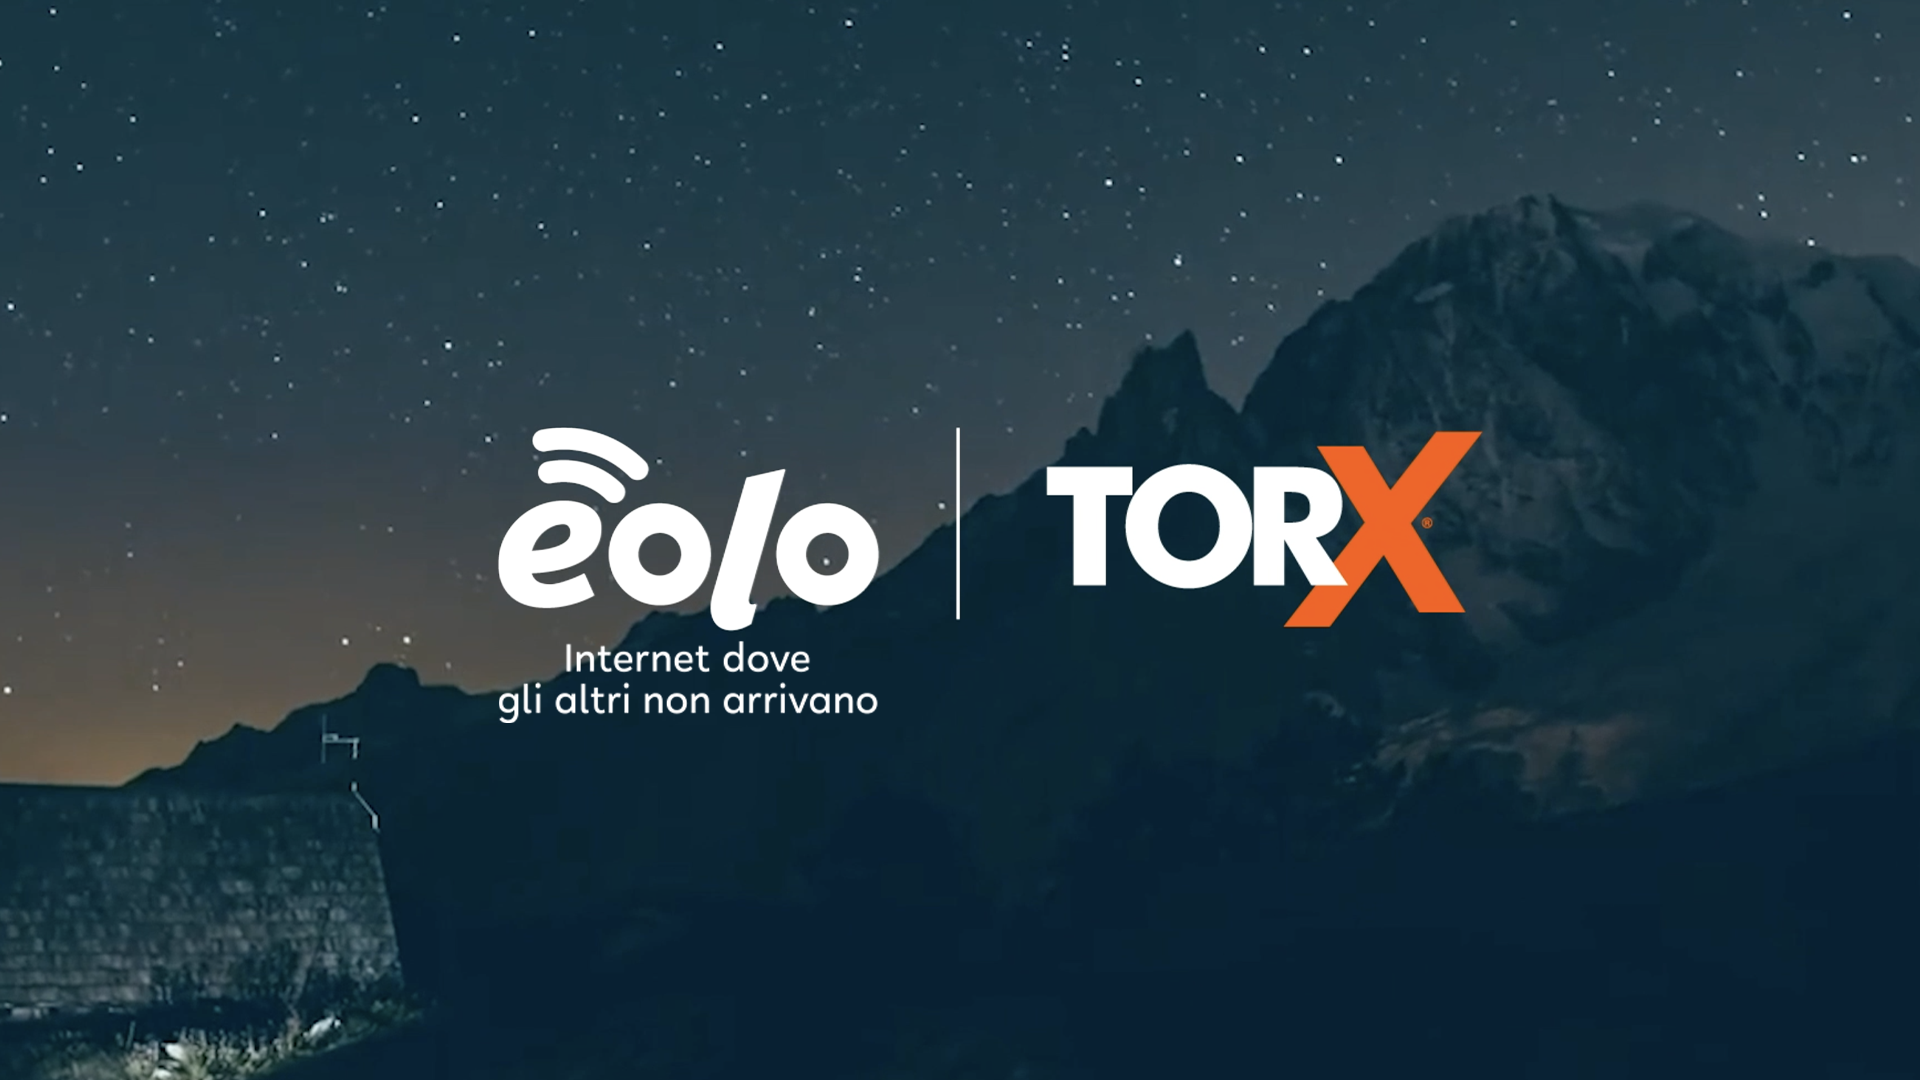 EOLO e TORX®: una sponsorship che prosegue grazie a obiettivi comuni.